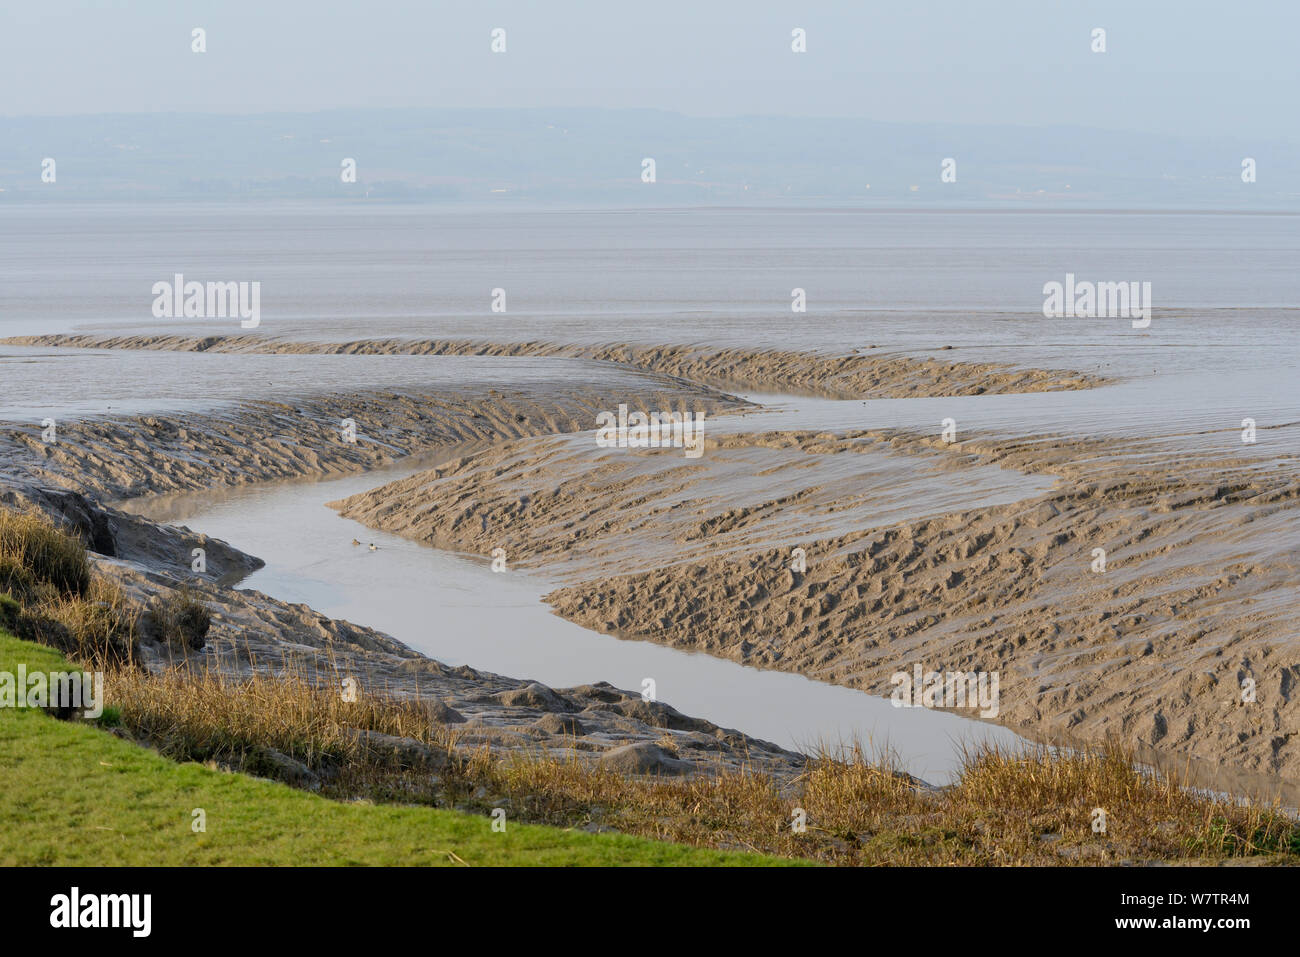 Bord de marais salants et des marées creek à travers les vasières à marée basse sur l'estuaire de la Severn, Somerset, Royaume-Uni, mars. Banque D'Images